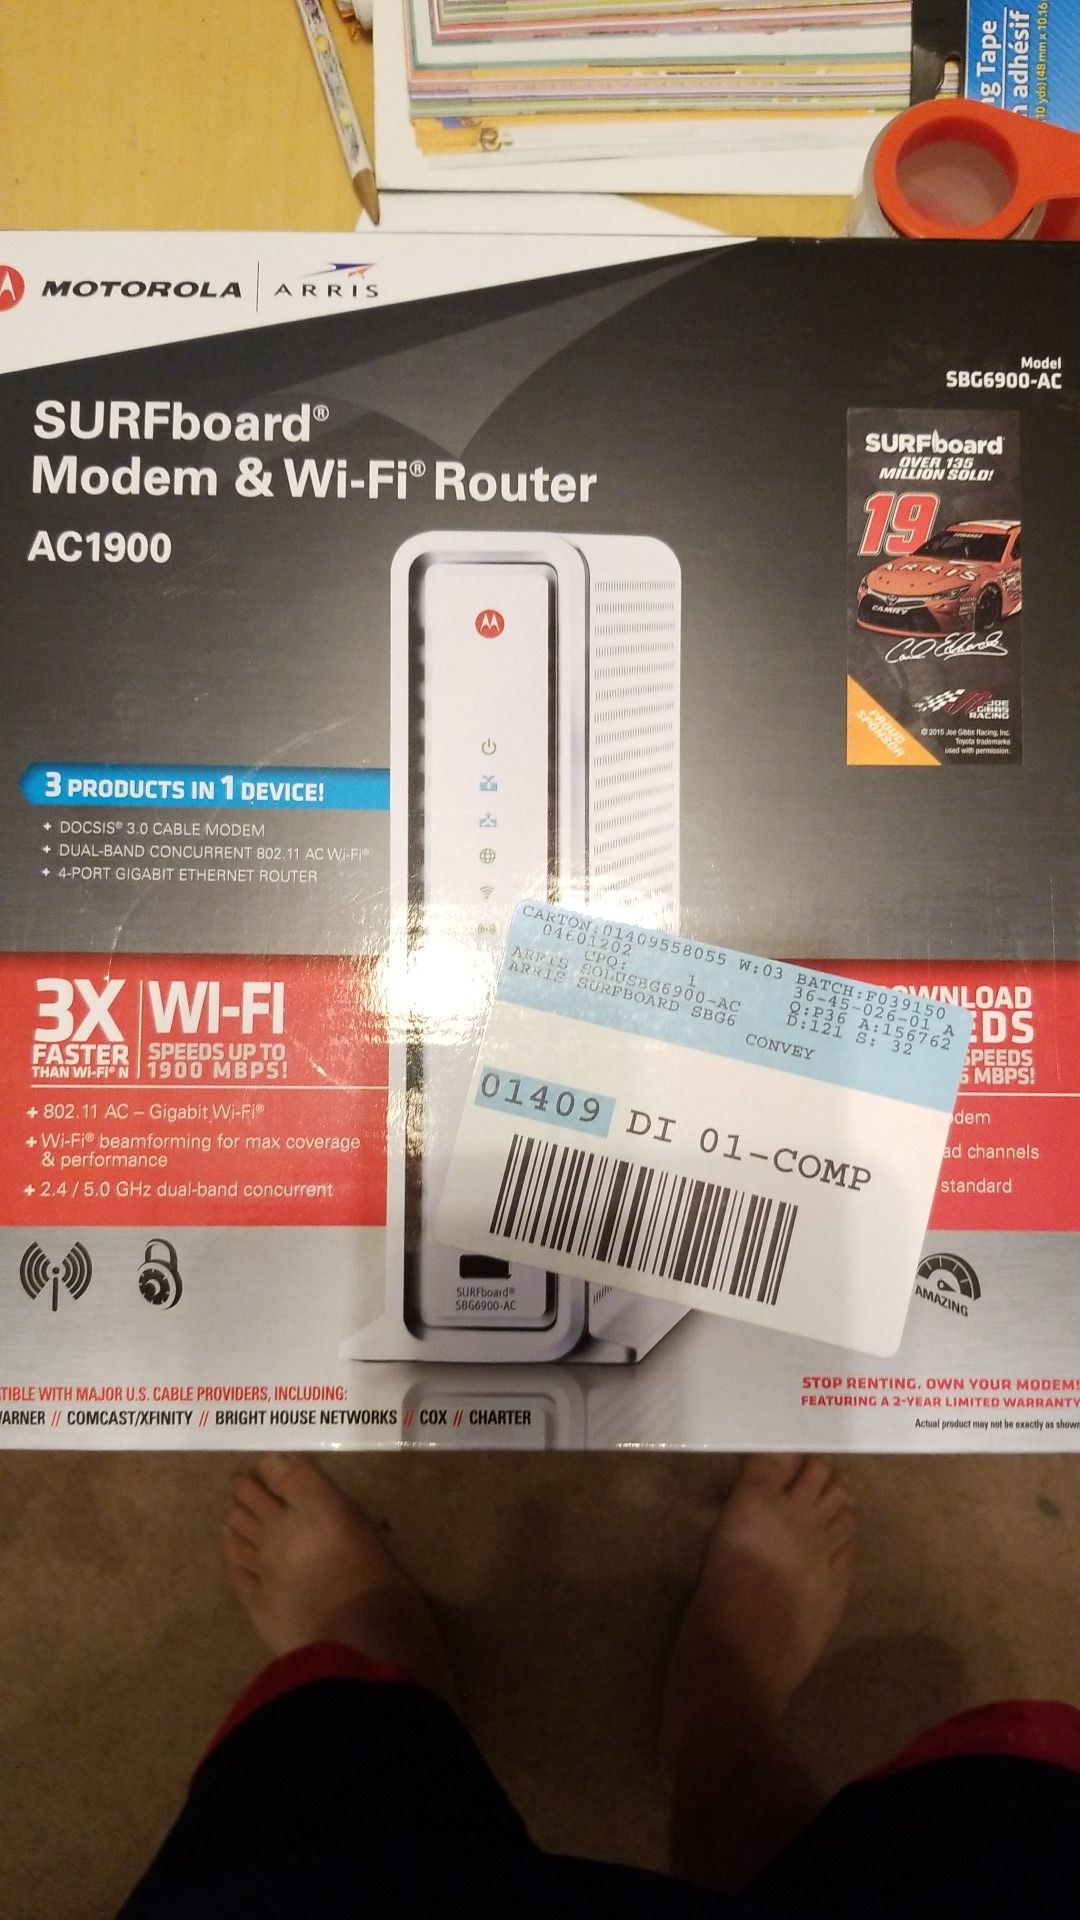 Arris SURFboard Modem & WiFi Router